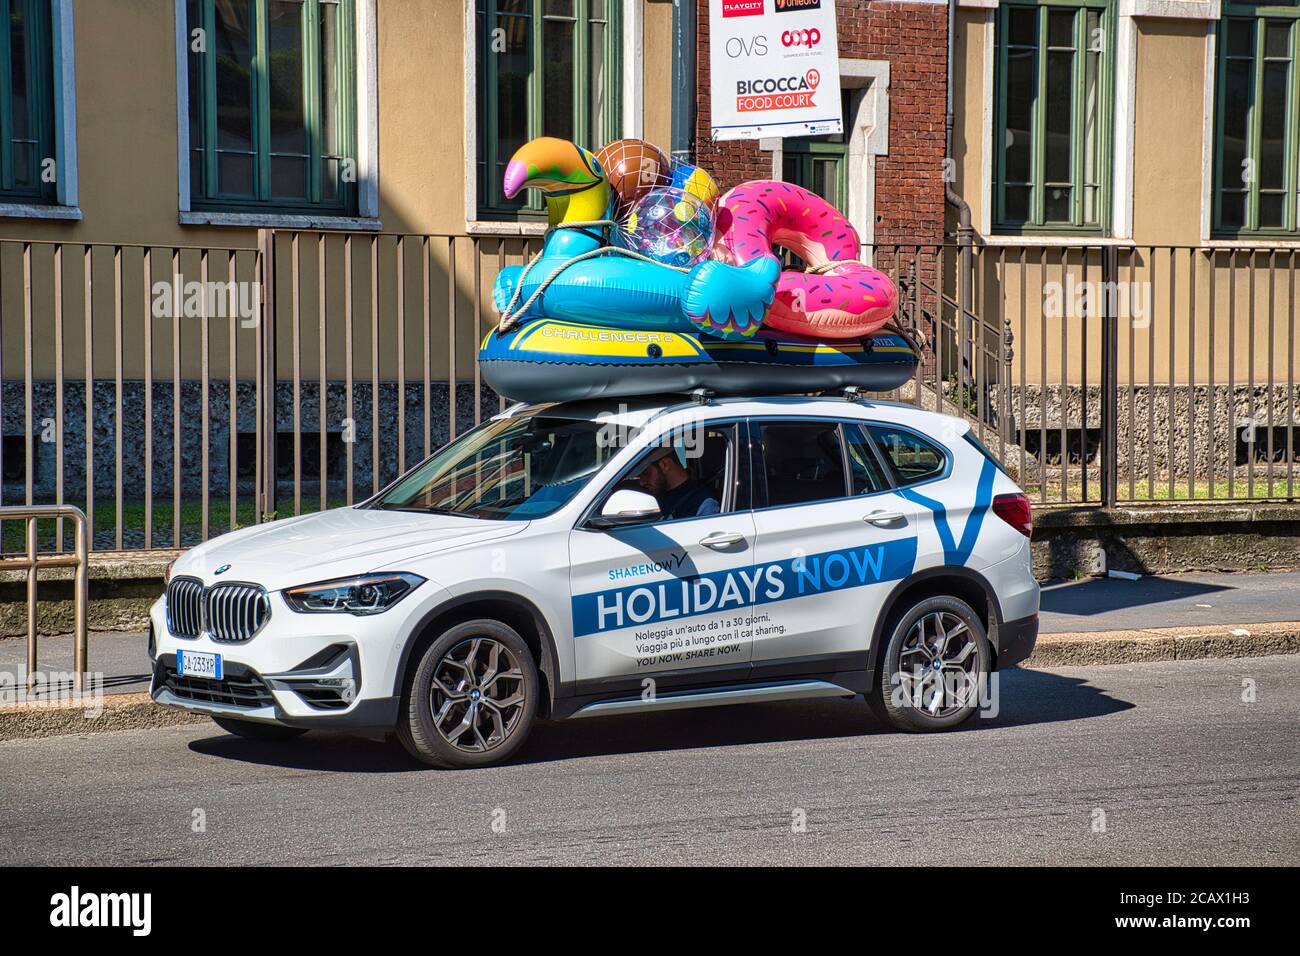 Milan, Italie 08.08.2020: Voiture publicitaire de vacances de la compagnie Car2go de partage de voiture Banque D'Images